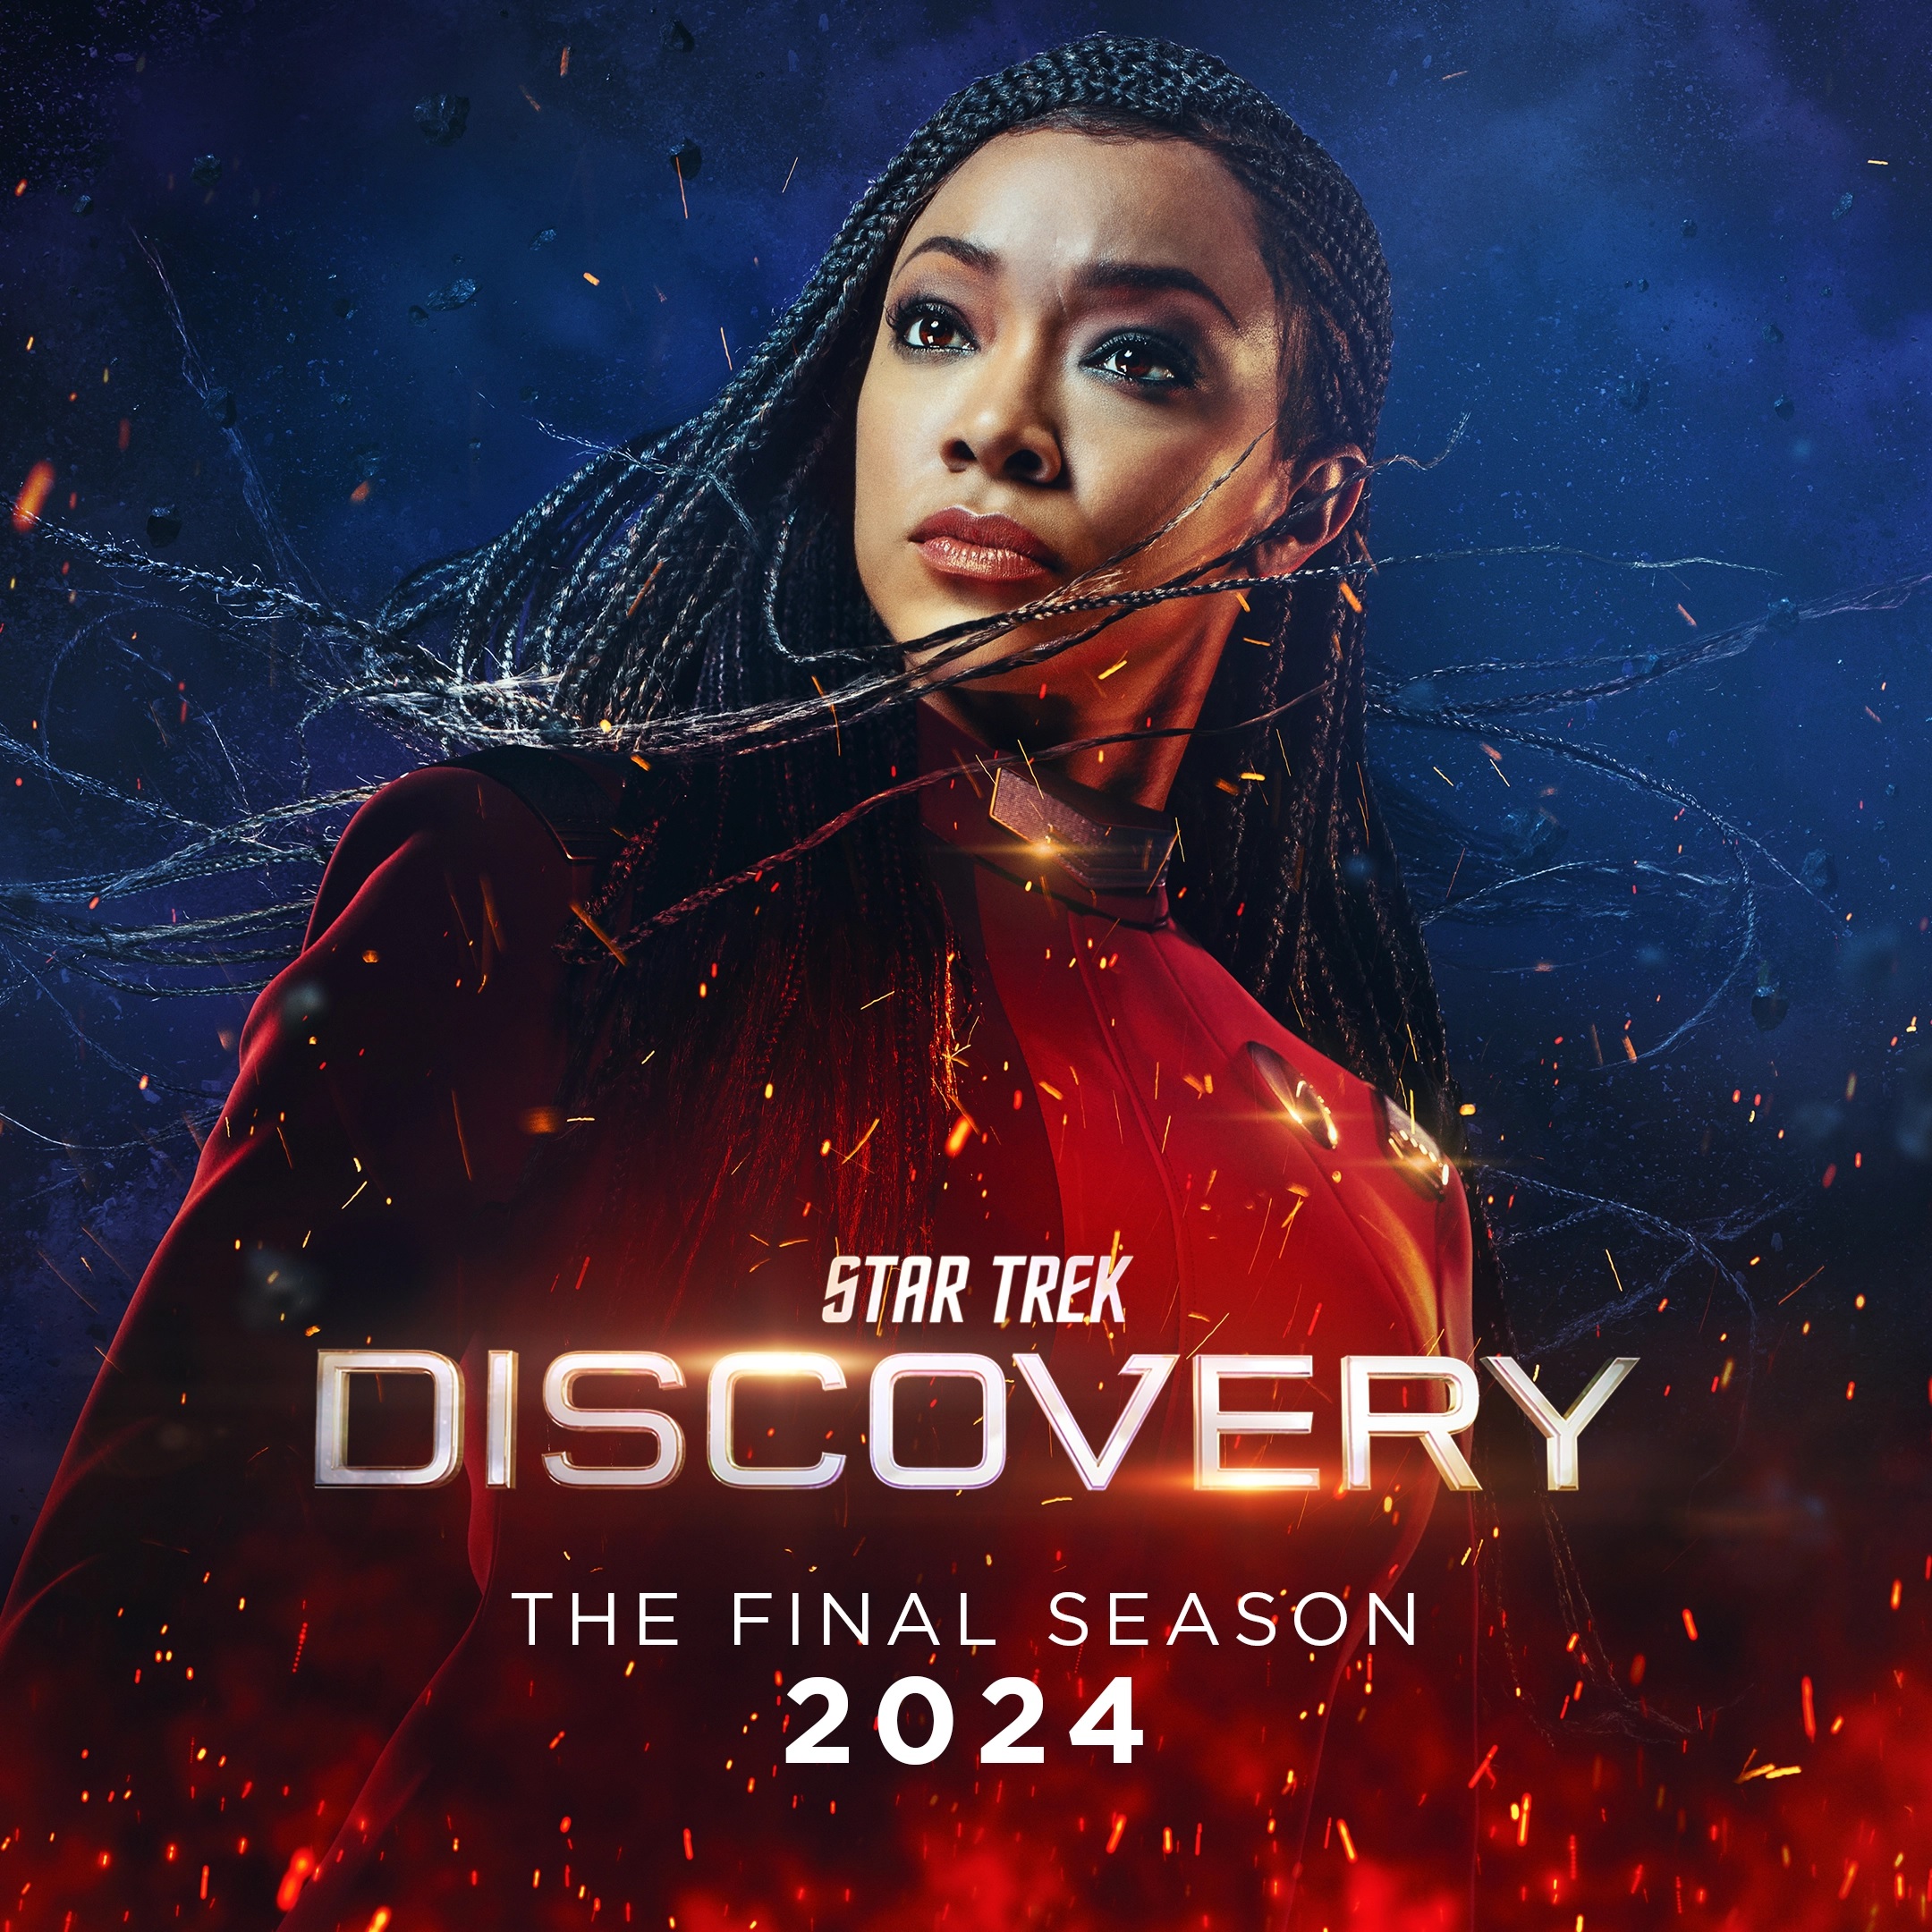 Star Trek: Discovery Season 5 promo image